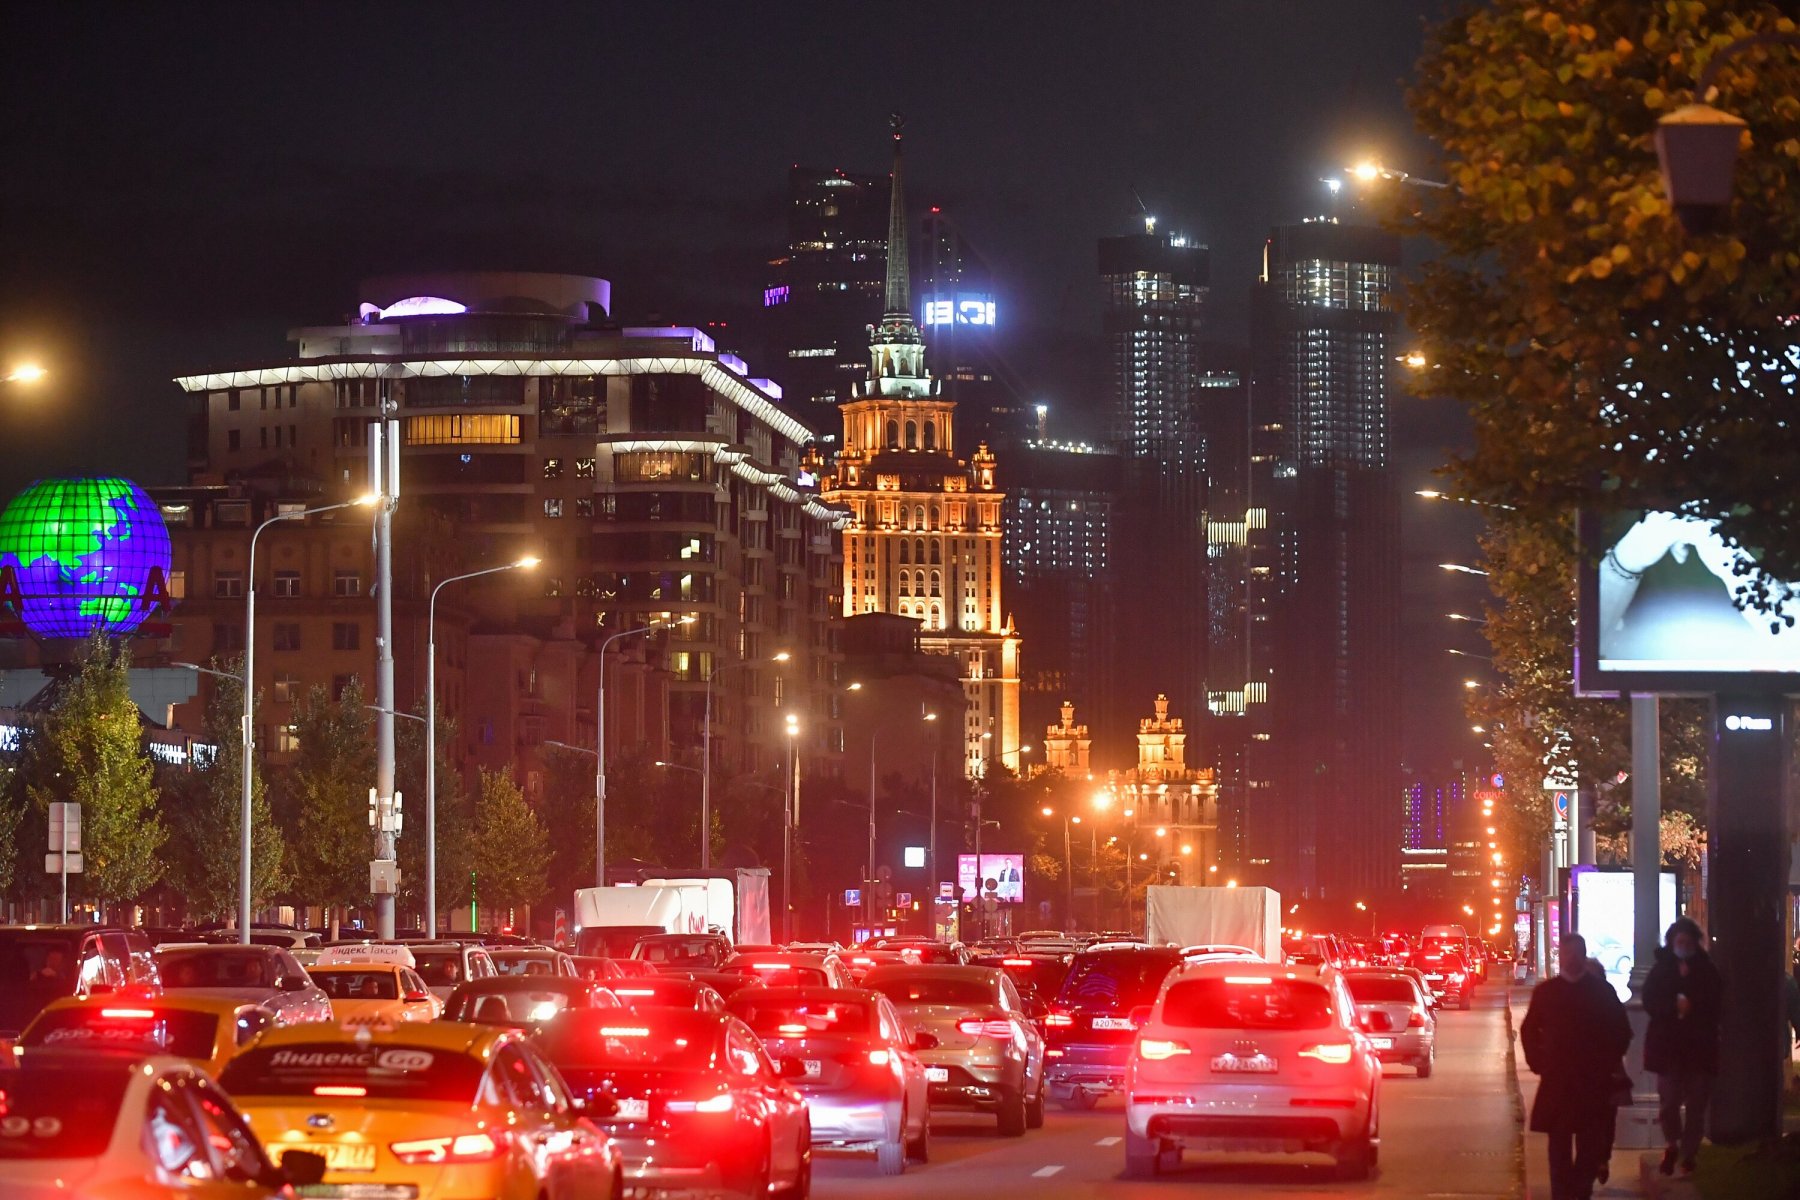 Московским автомобилистам рекомендуют воспользоваться общественным транспортом из-за вечерних пробок